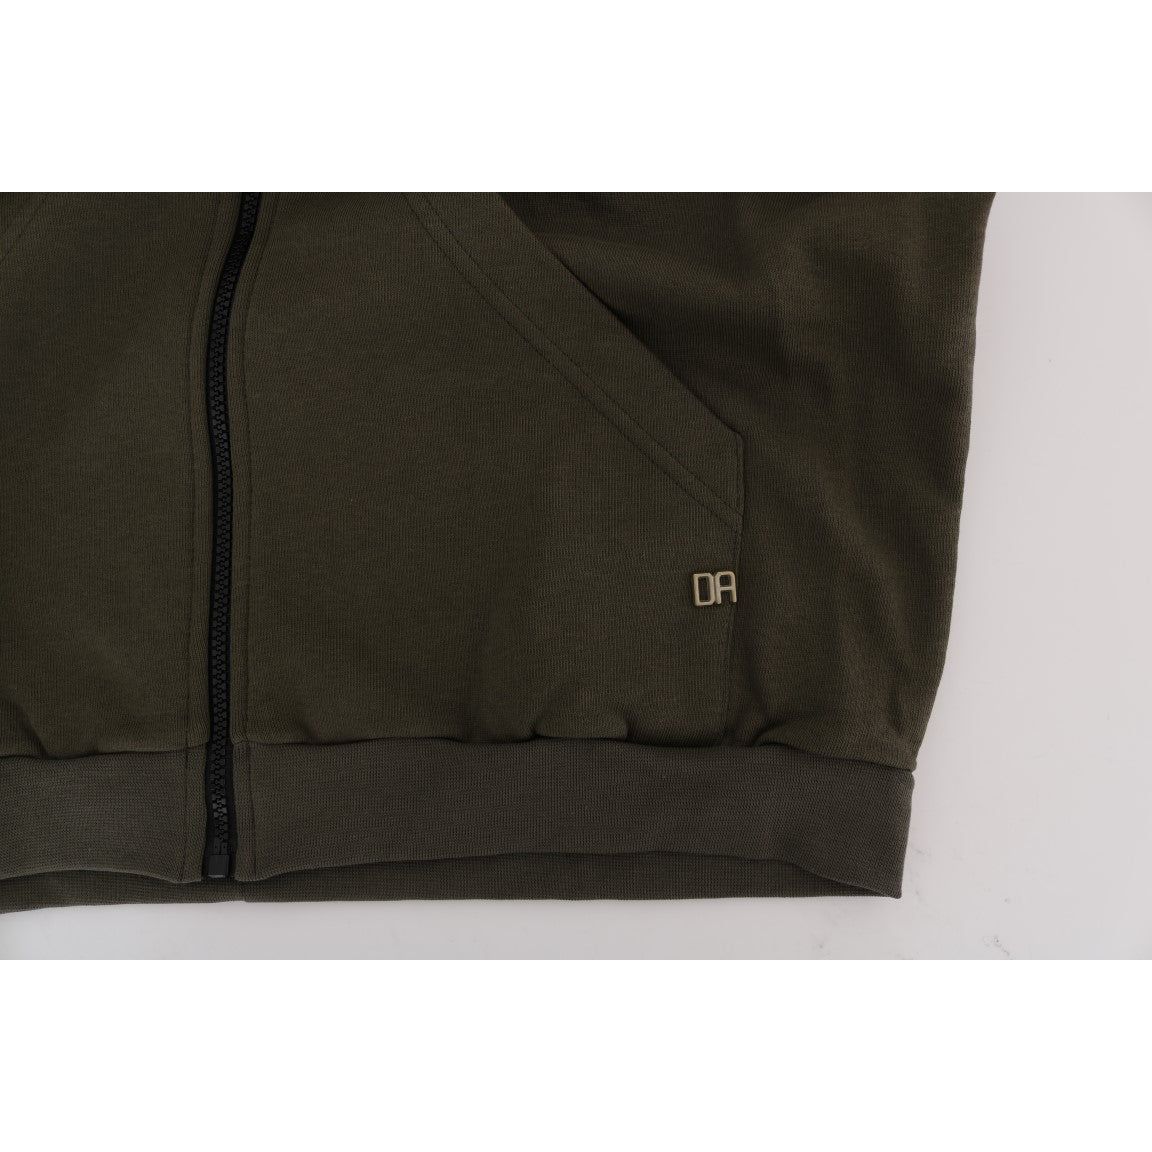 Daniele Alessandrini | Green Full Zipper Hodded Cotton Sweater | McRichard Designer Brands